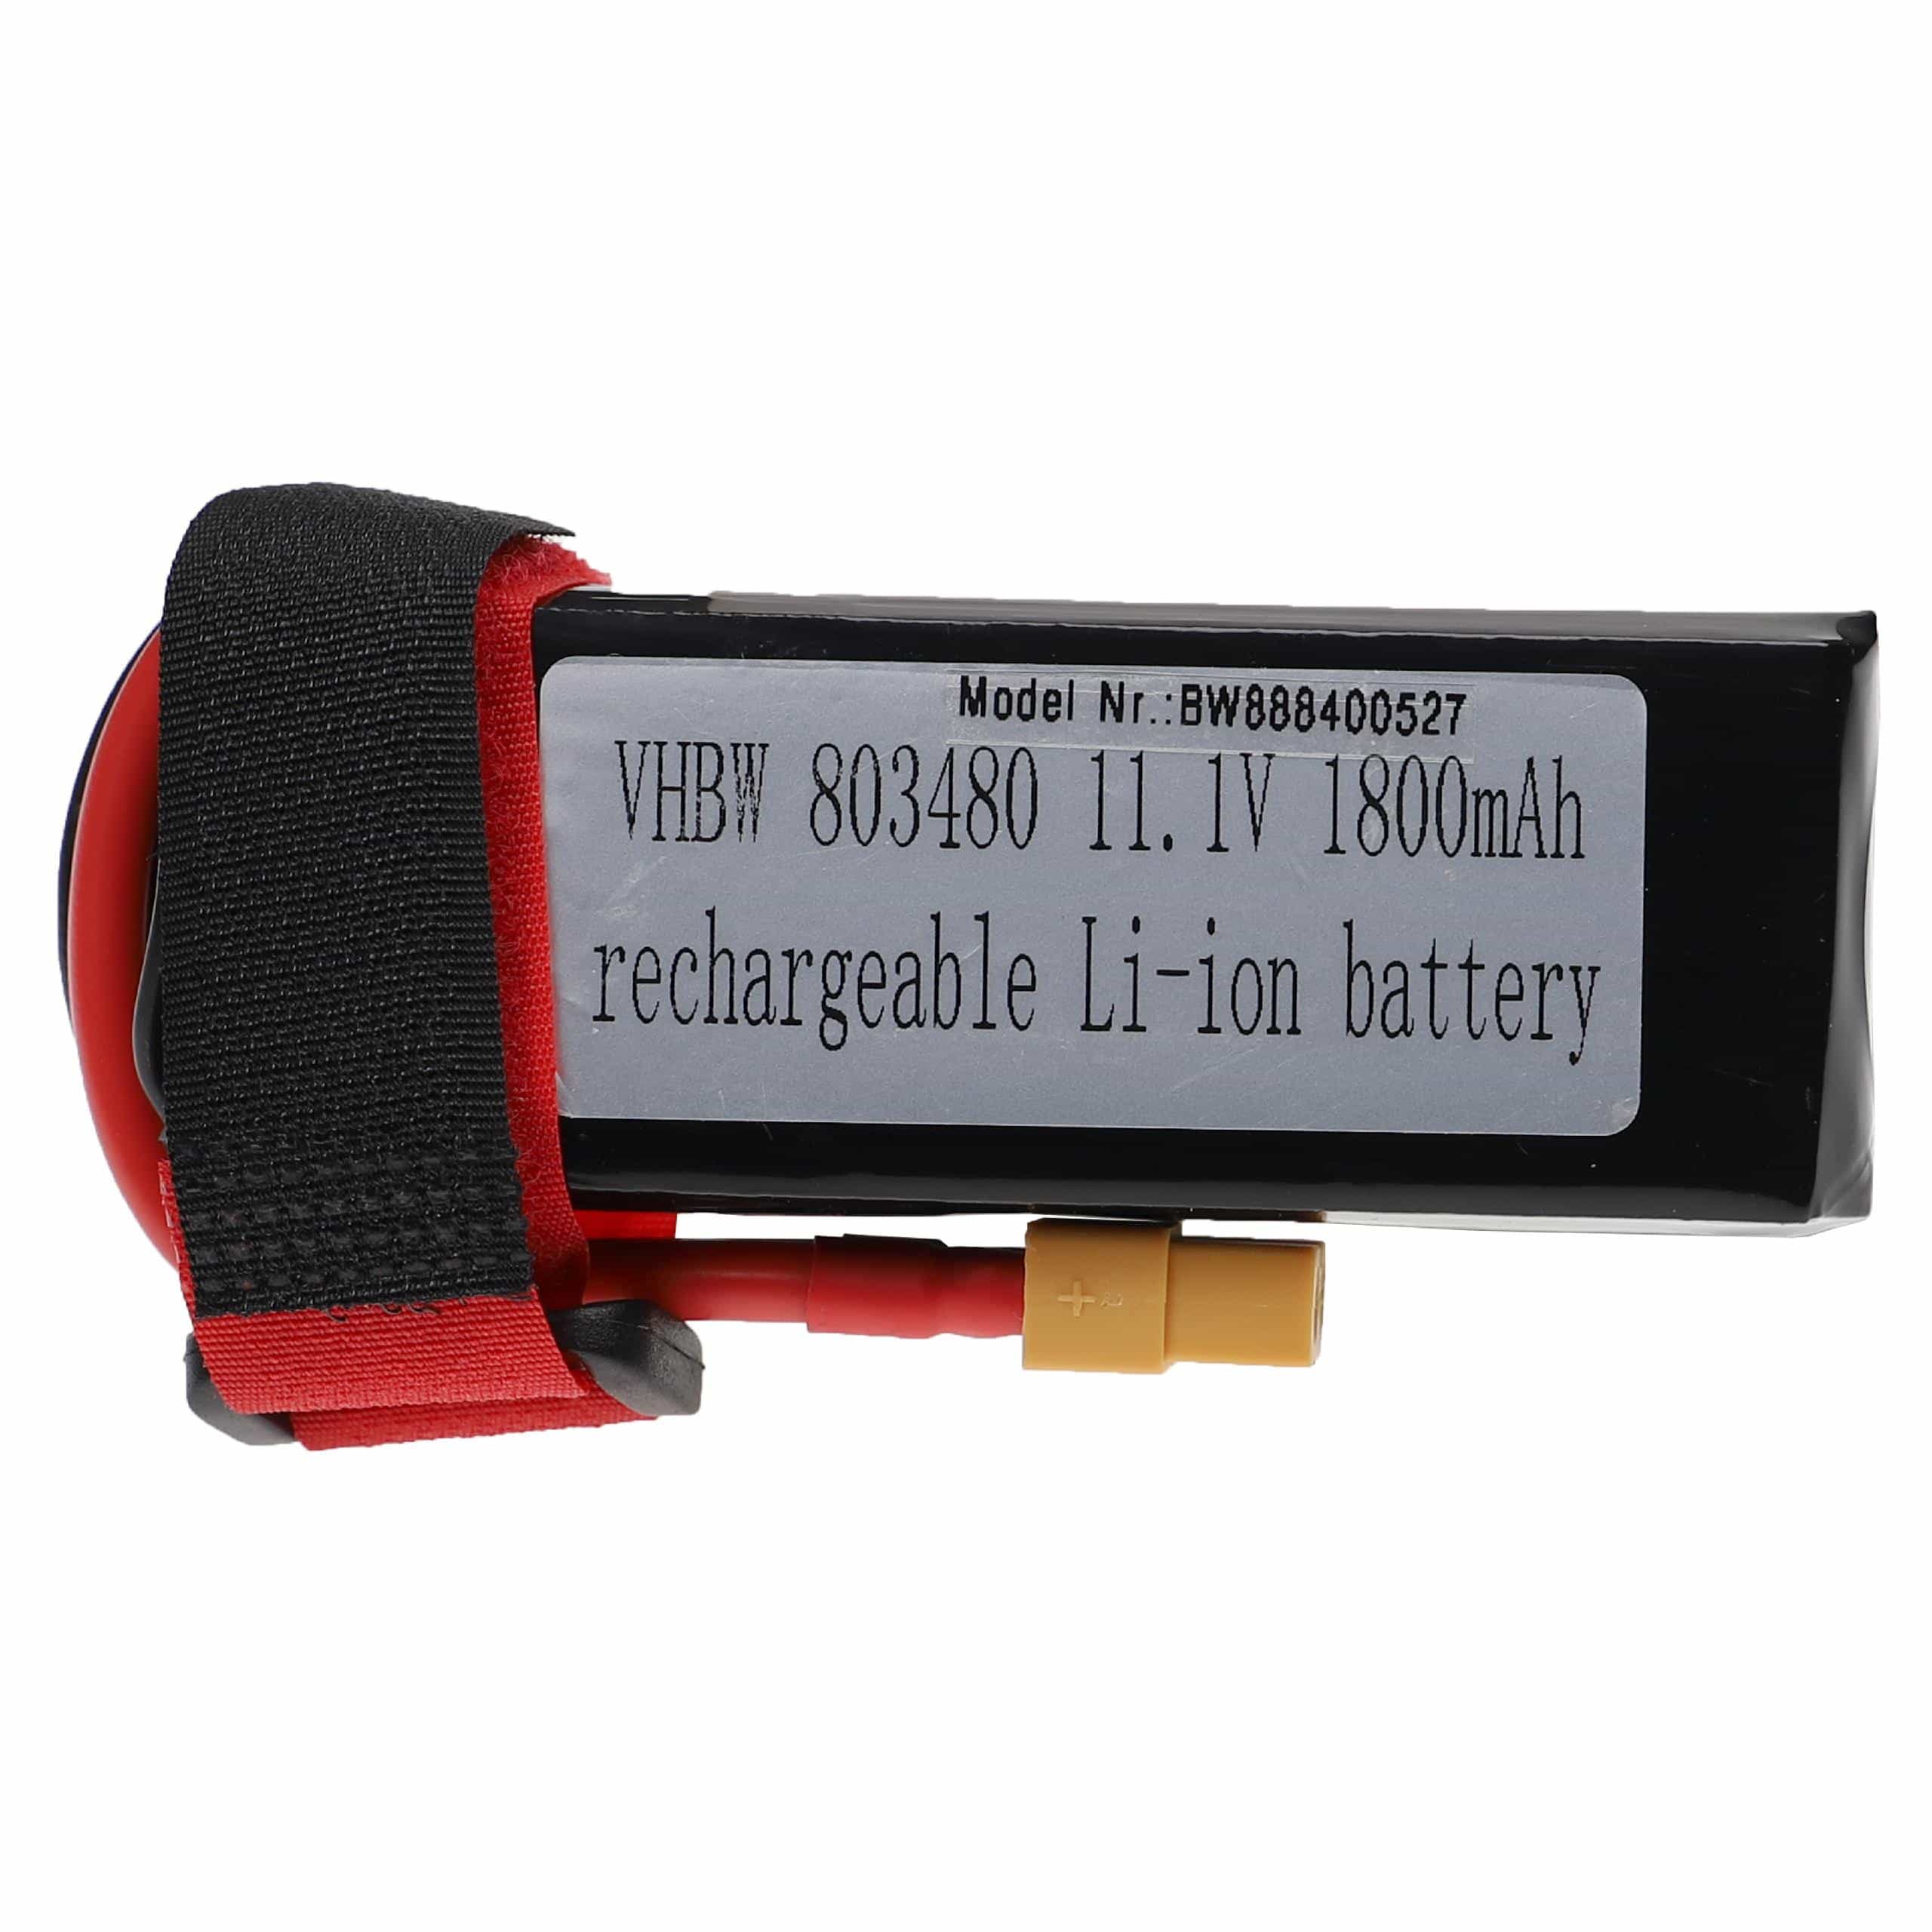 Batterie pour modèle radio-télécommandé - 1800mAh 11,1V Li-polymère, XT60